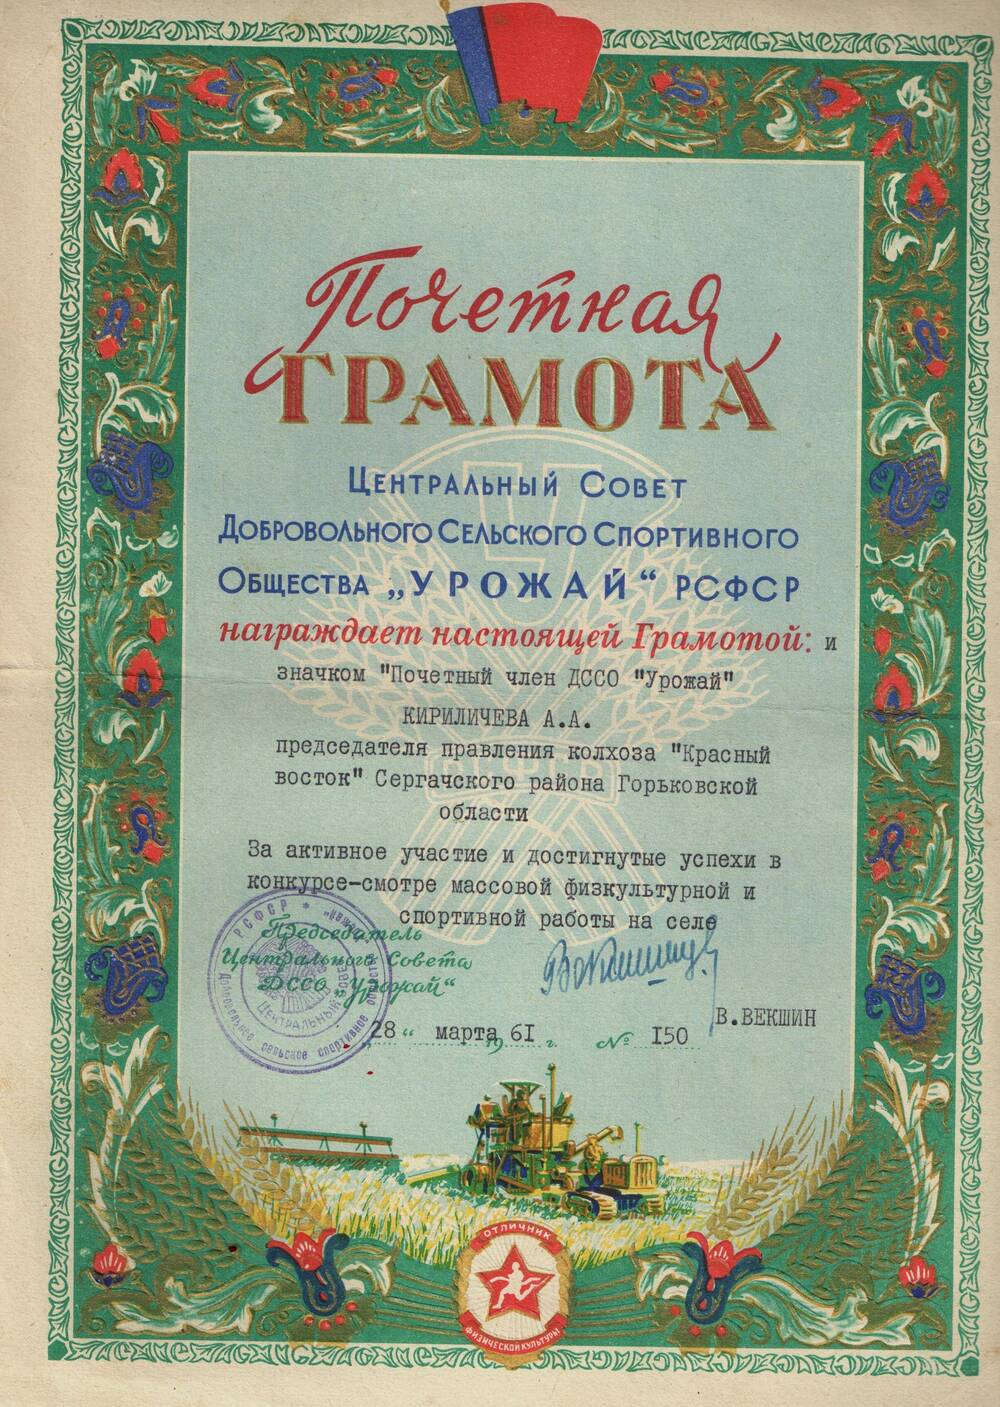 Грамота почетная Кириличева А.А. за активное участие и достигнутые успехи в конкурсе-смотре. 1961 г.